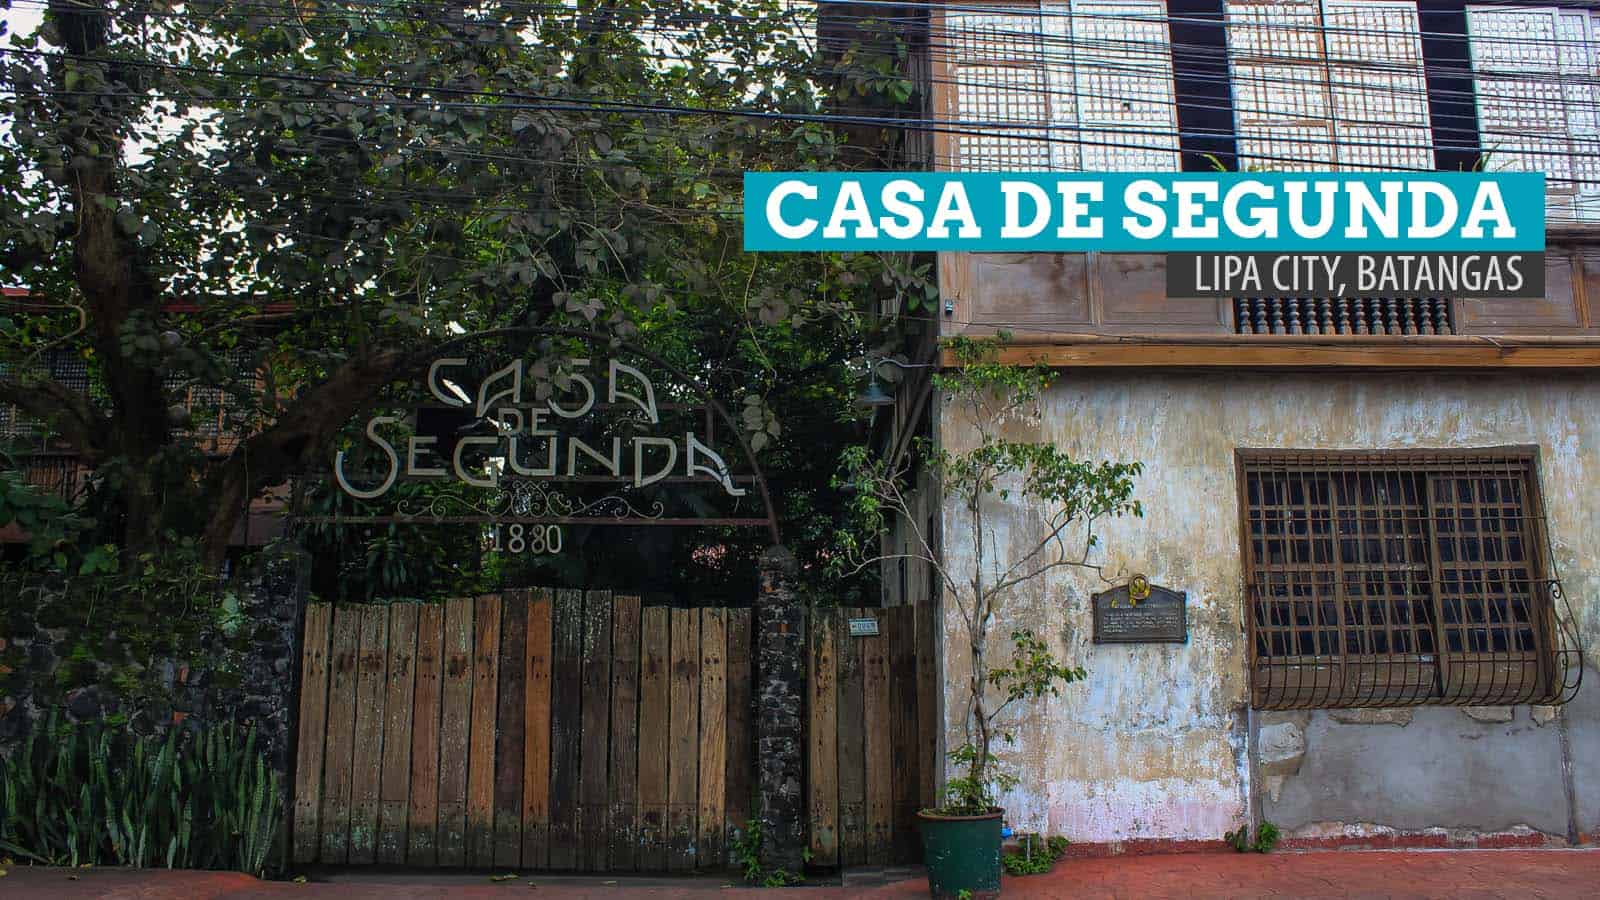 CASA DE SEGUNDA:在巴丹加斯的利帕市遇见Jose Rizal的初恋